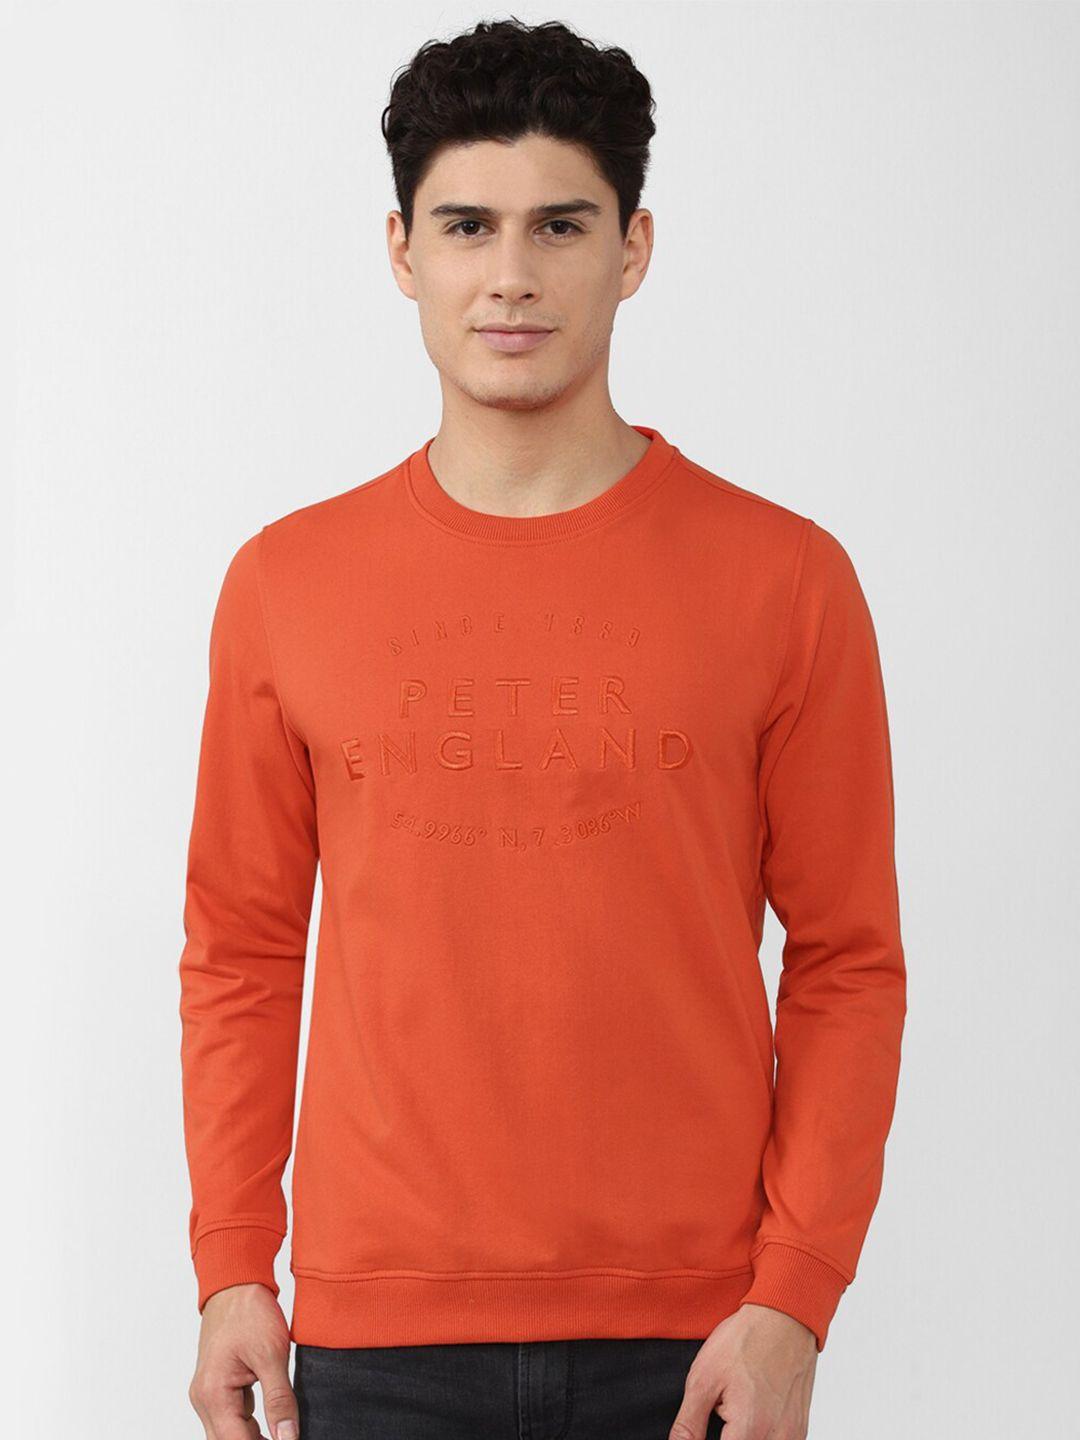 peter england casuals men orange embroidered sweatshirt